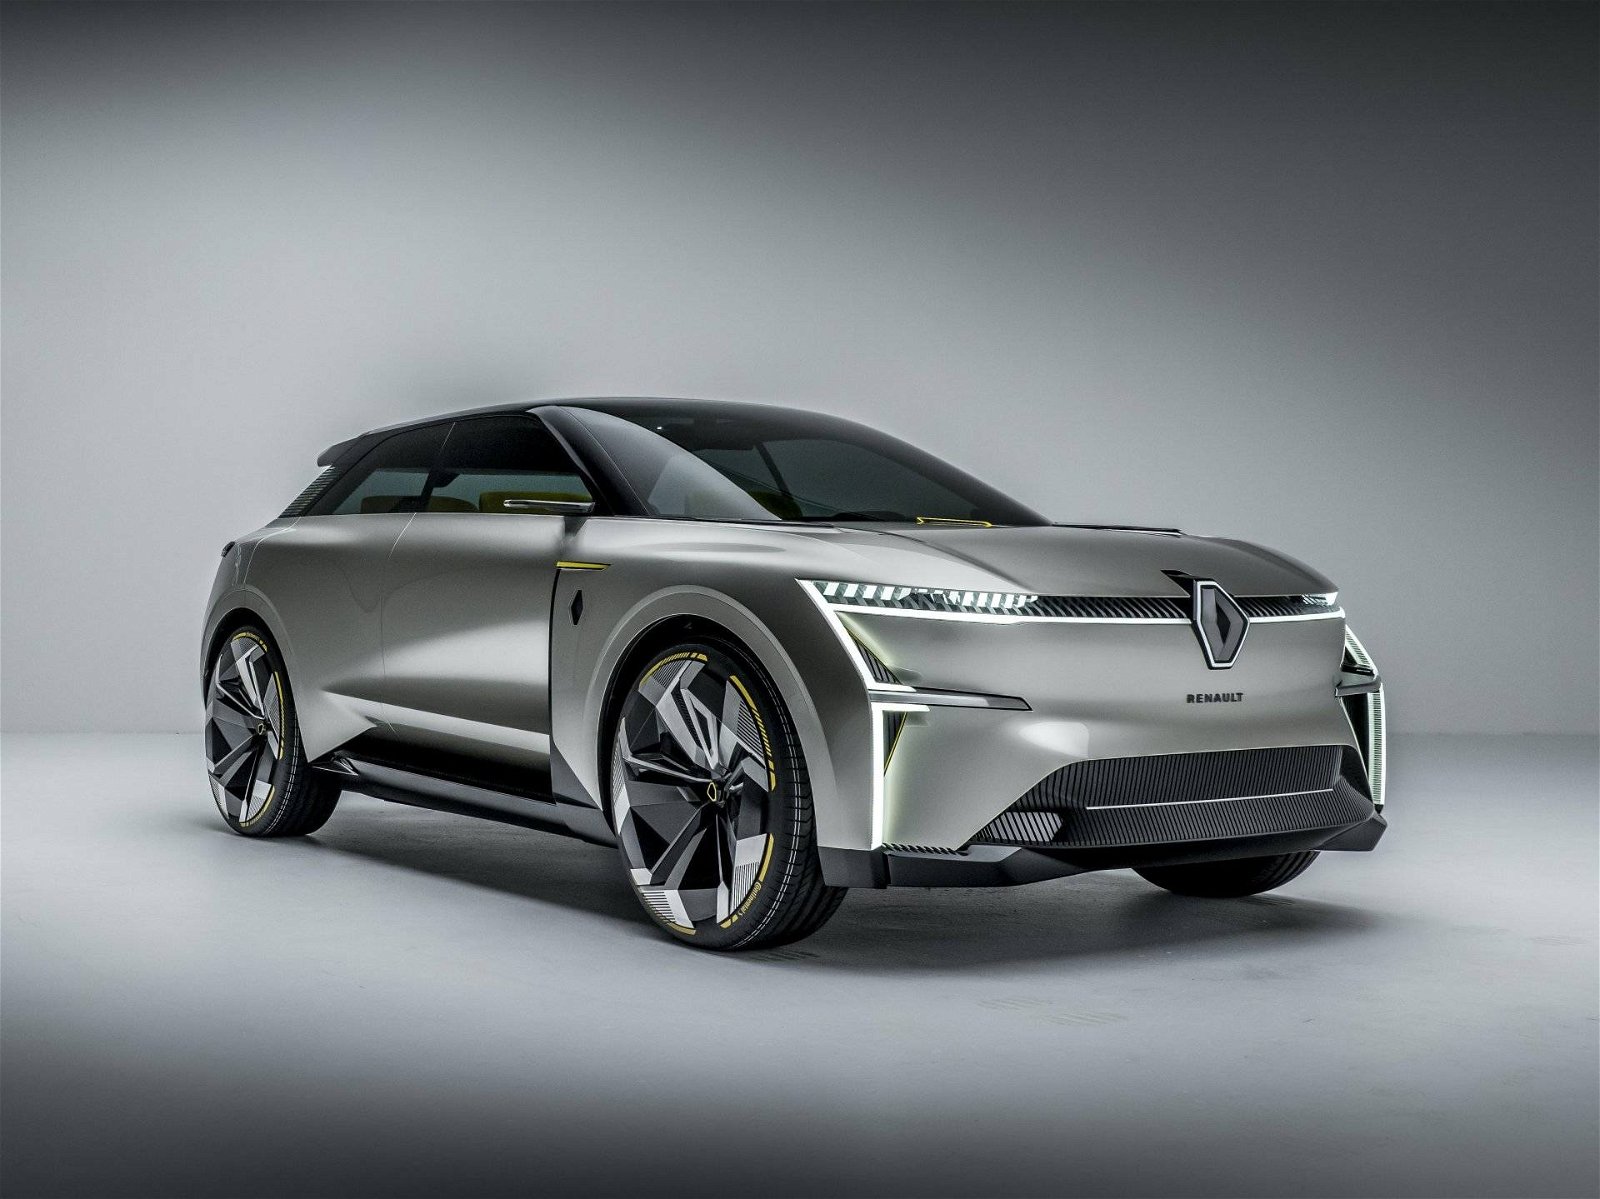 Immagine di Renault Morphoz, presentato il nuovo concept elettrico e modulare